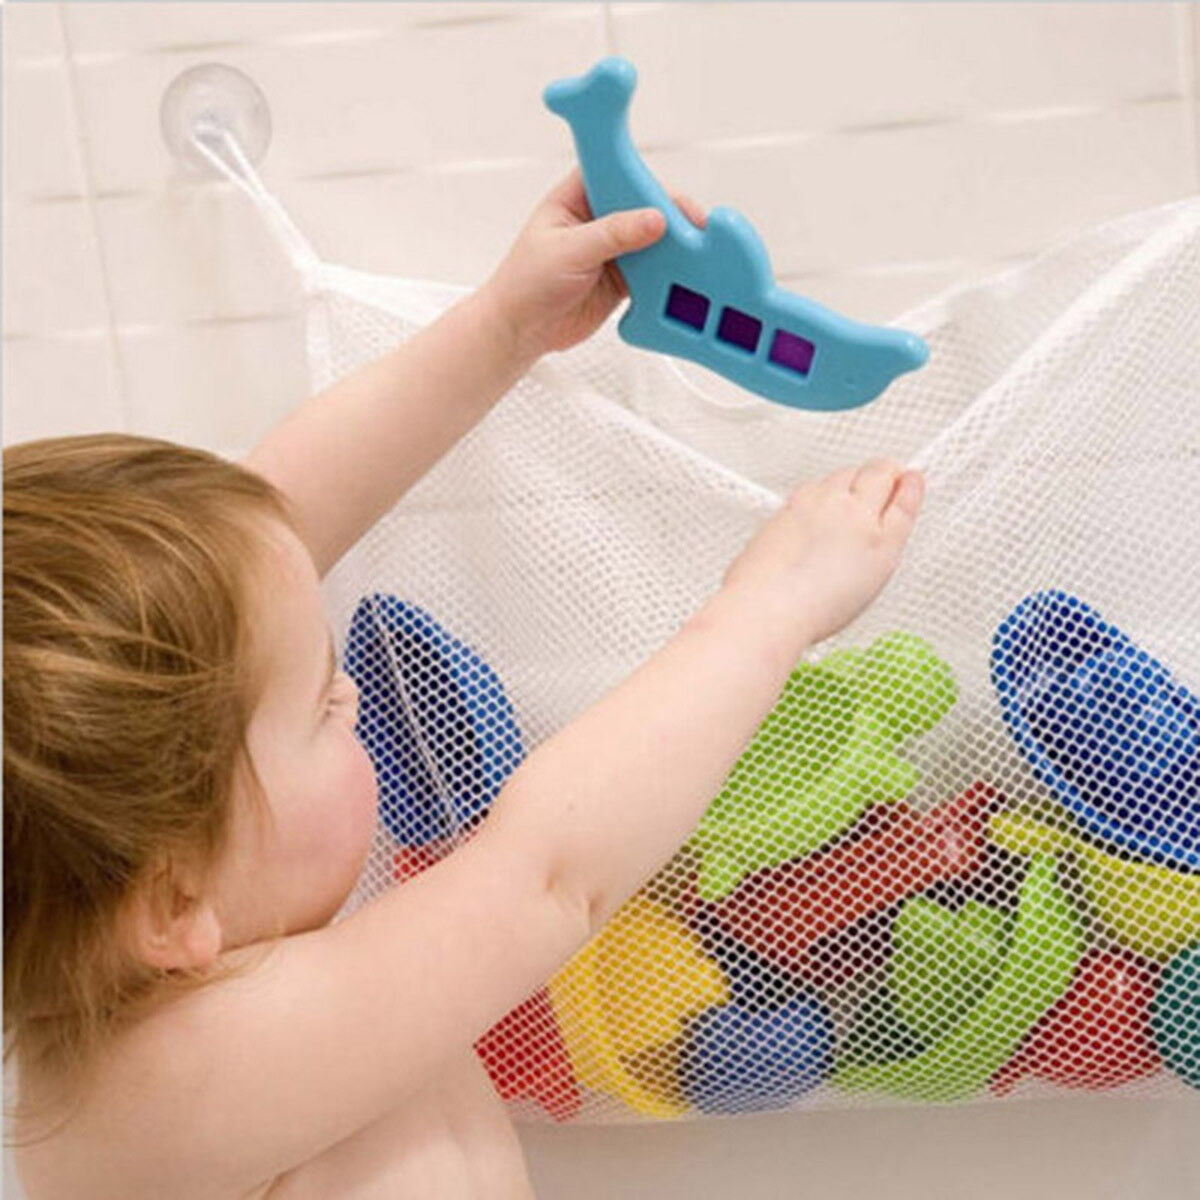 Fashion Baby Bath Bathtub Toy Mesh Net Storage Bag Organizer Holder Bathroom Unbranded Does Not Apply - фотография #4